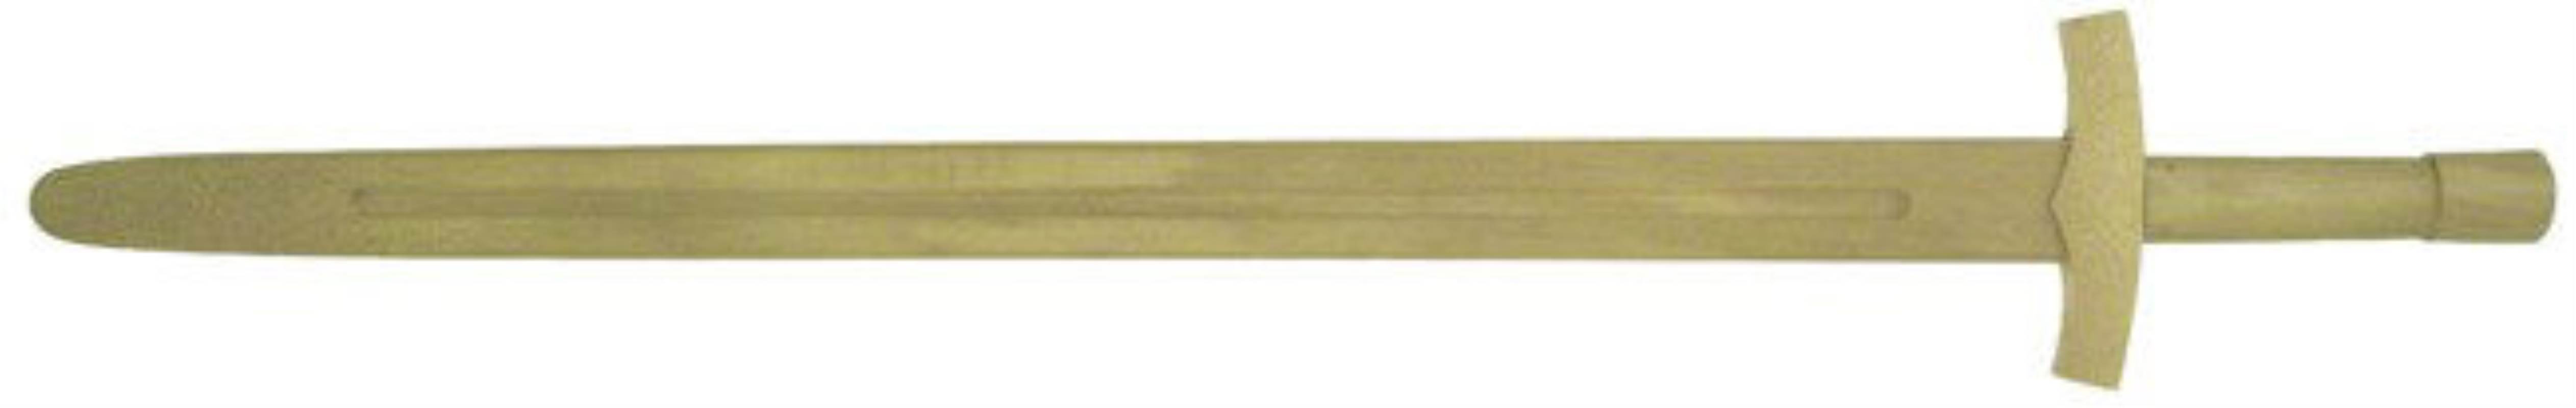 Wooden Single Hand Sword